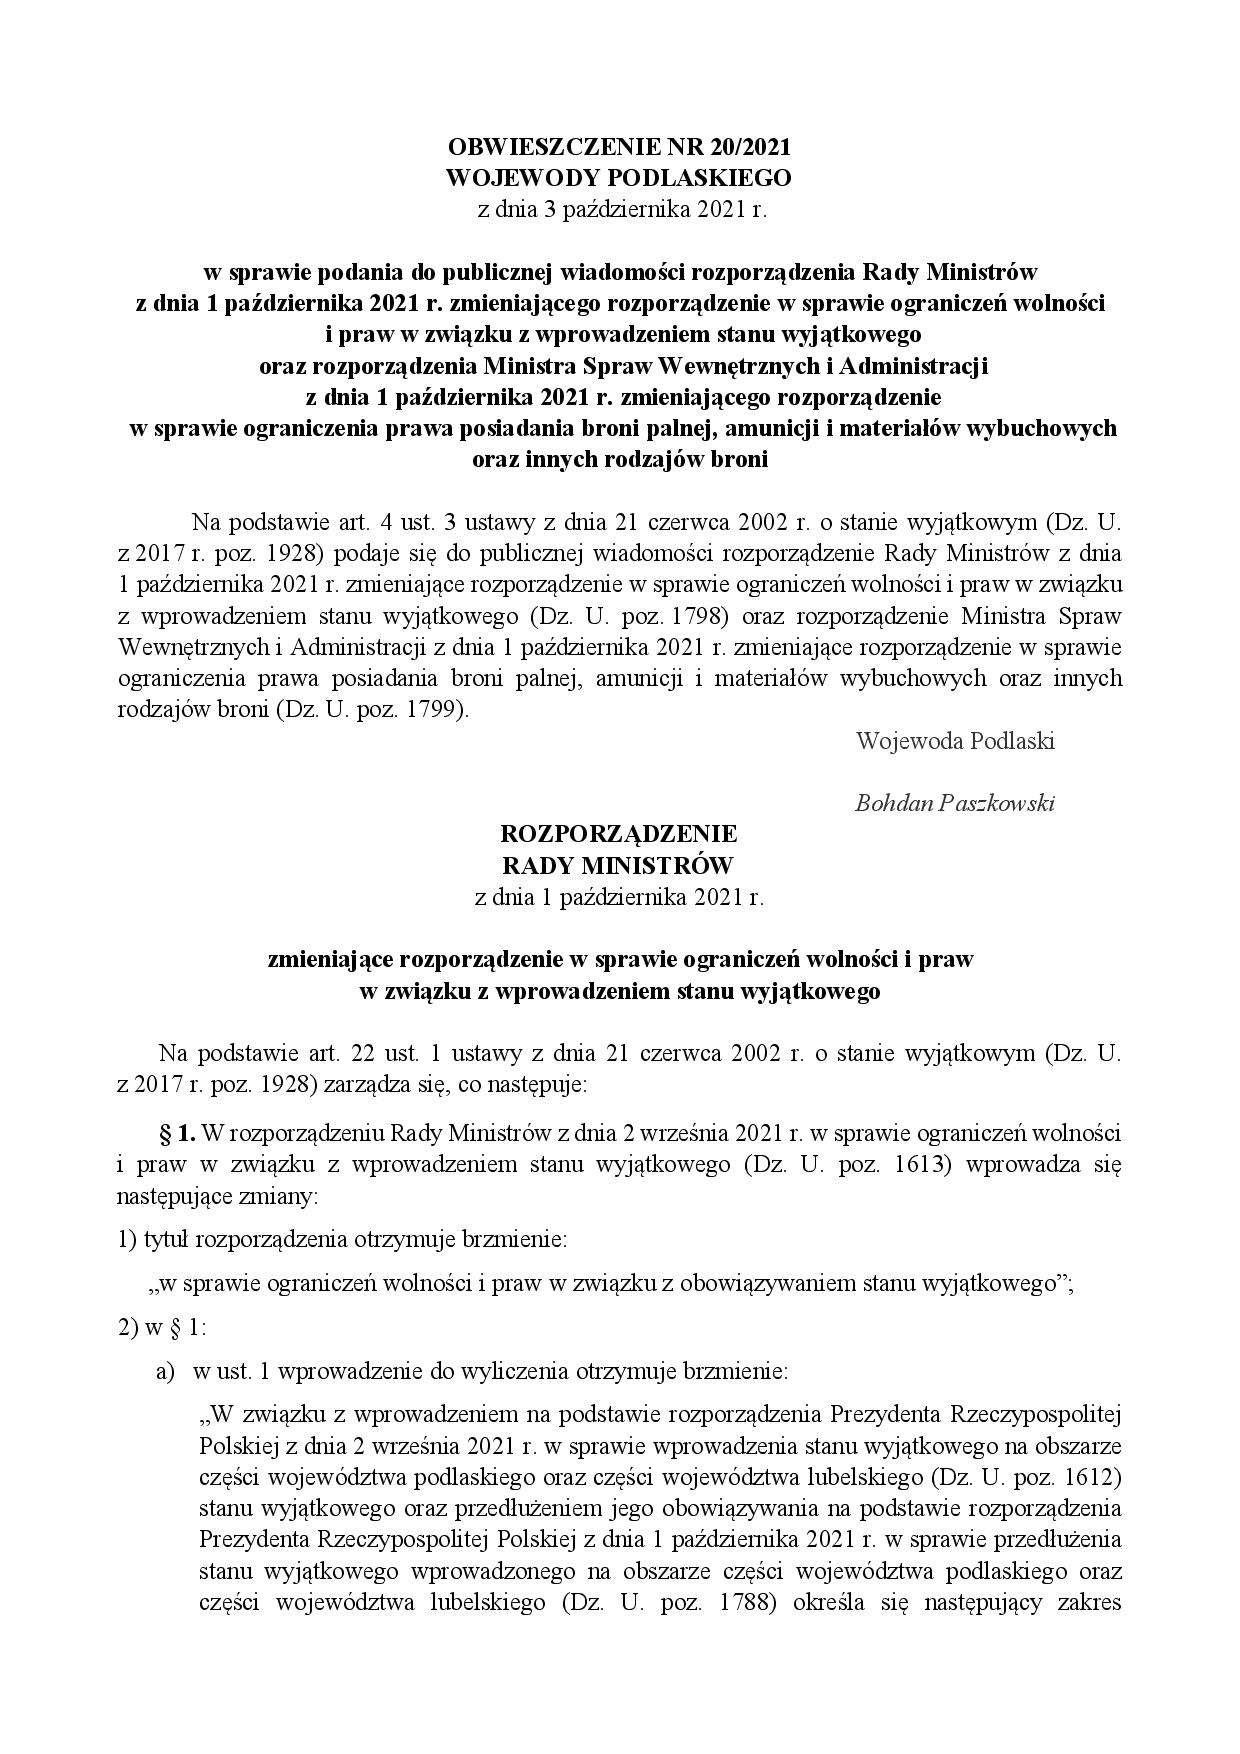 Obwieszczenie Wojewody Podlaskiego w sprawie podania do publicznej wiadomości rozporządzenia 11